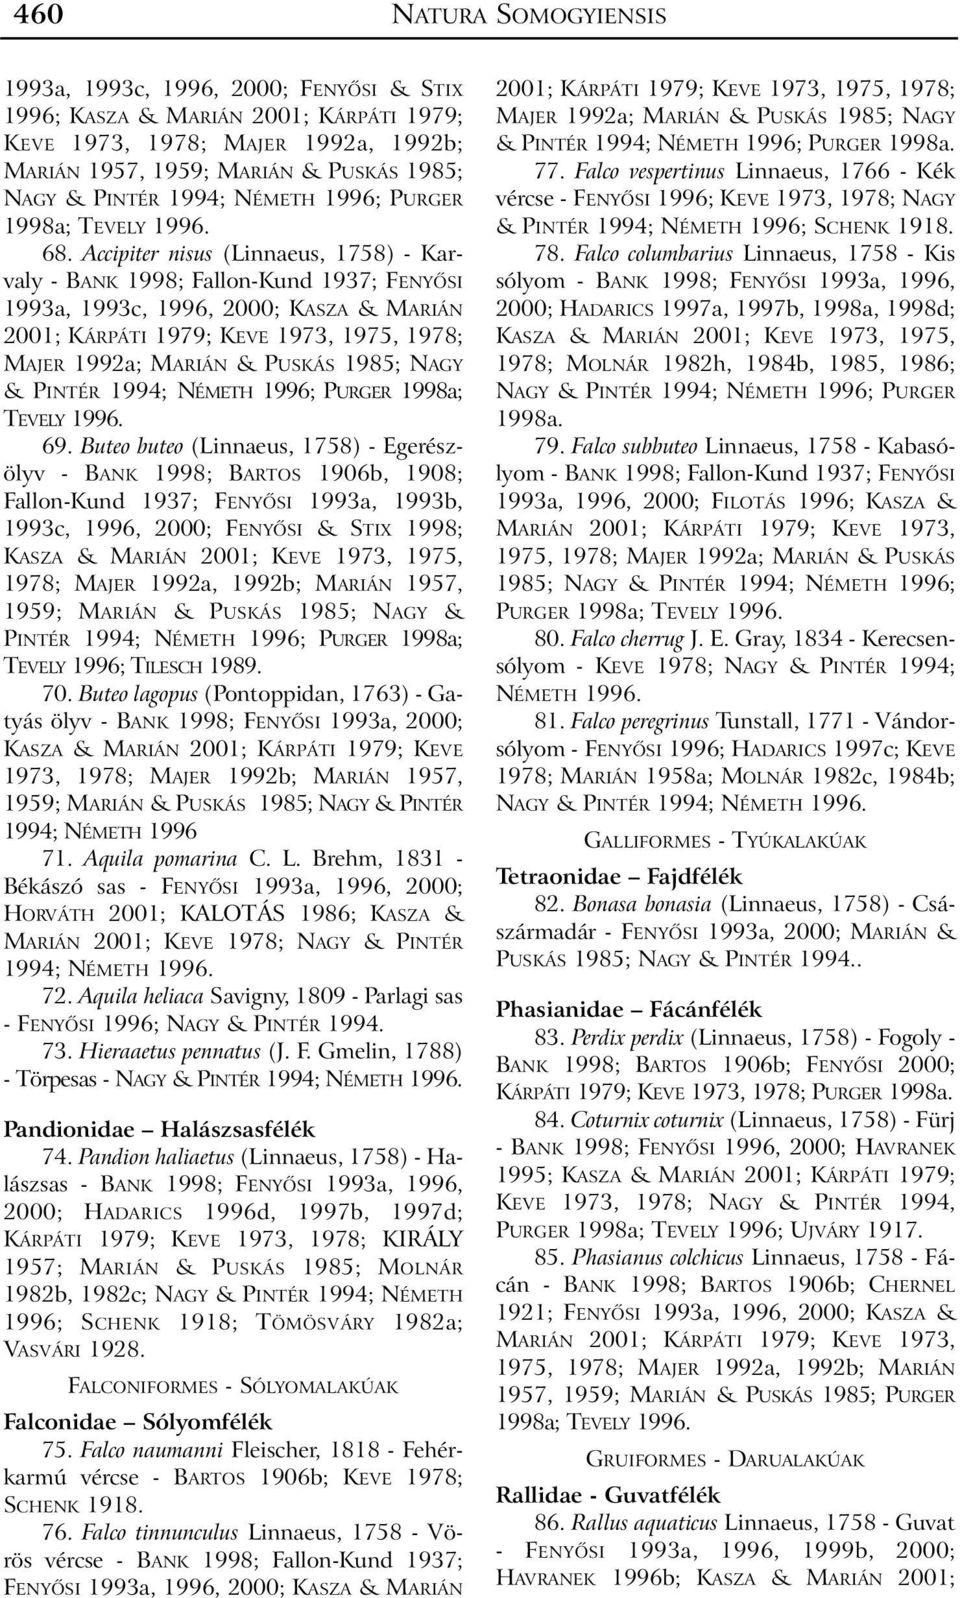 Accipiter nisus (Linnaeus, 1758) - Karvaly - BANK 1998; Fallon-Kund 1937; FENYÕSI 1993a, 1993c, 1996, 2000; KASZA & MARIÁN 2001; KÁRPÁTI 1979; KEVE 1973, 1975, 1978; MAJER 1992a; MARIÁN & PUSKÁS